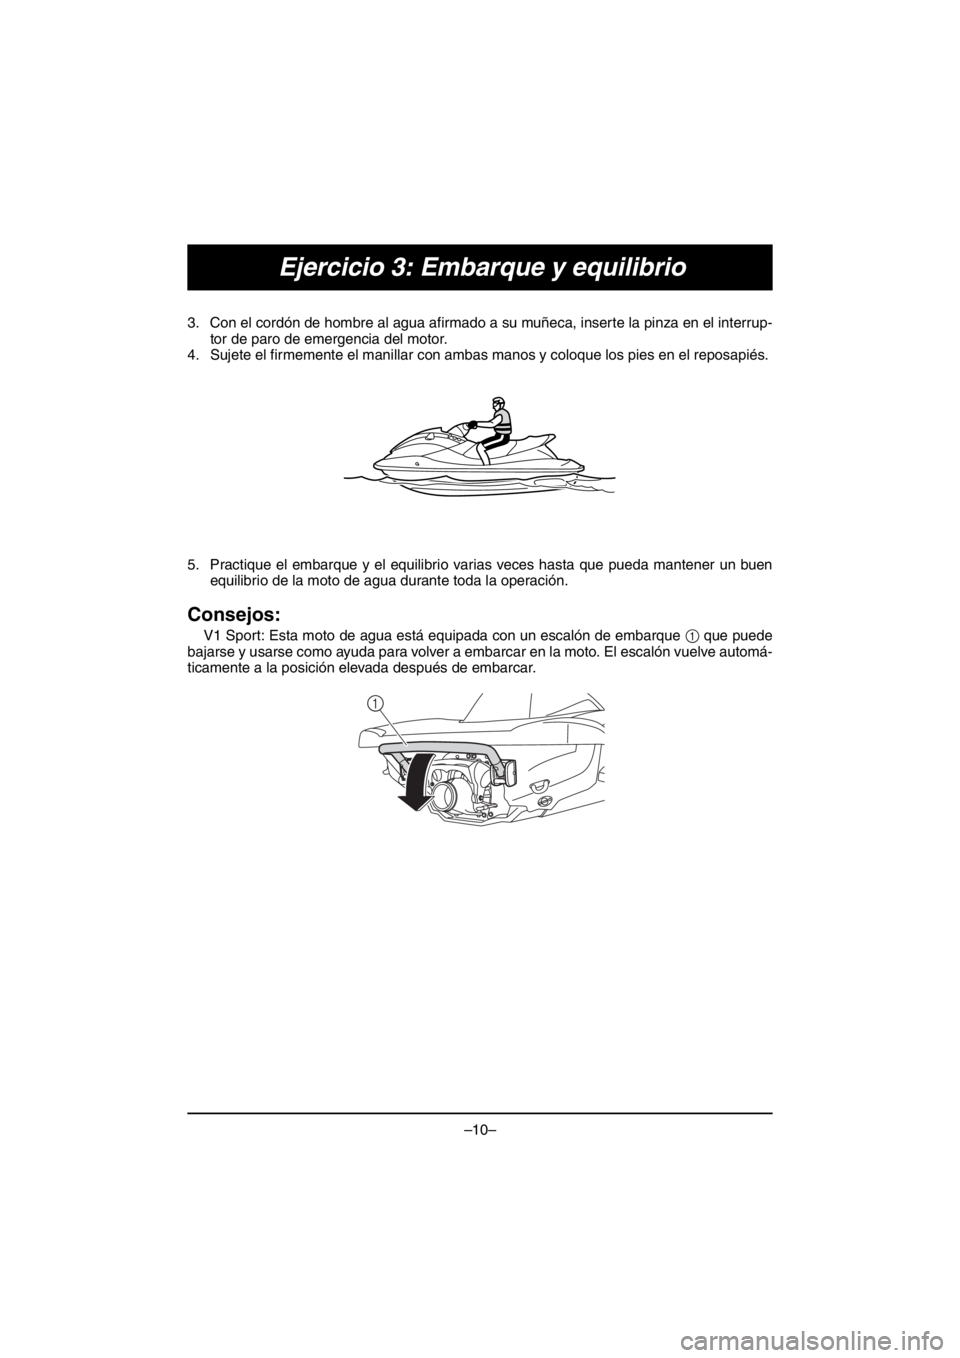 YAMAHA V1 2016 Manual Online –10–
Ejercicio 3: Embarque y equilibrio
3. Con el cordón de hombre al agua afirmado a su muñeca, inserte la pinza en el interrup-
tor de paro de emergencia del motor.
4. Sujete el firmemente el 